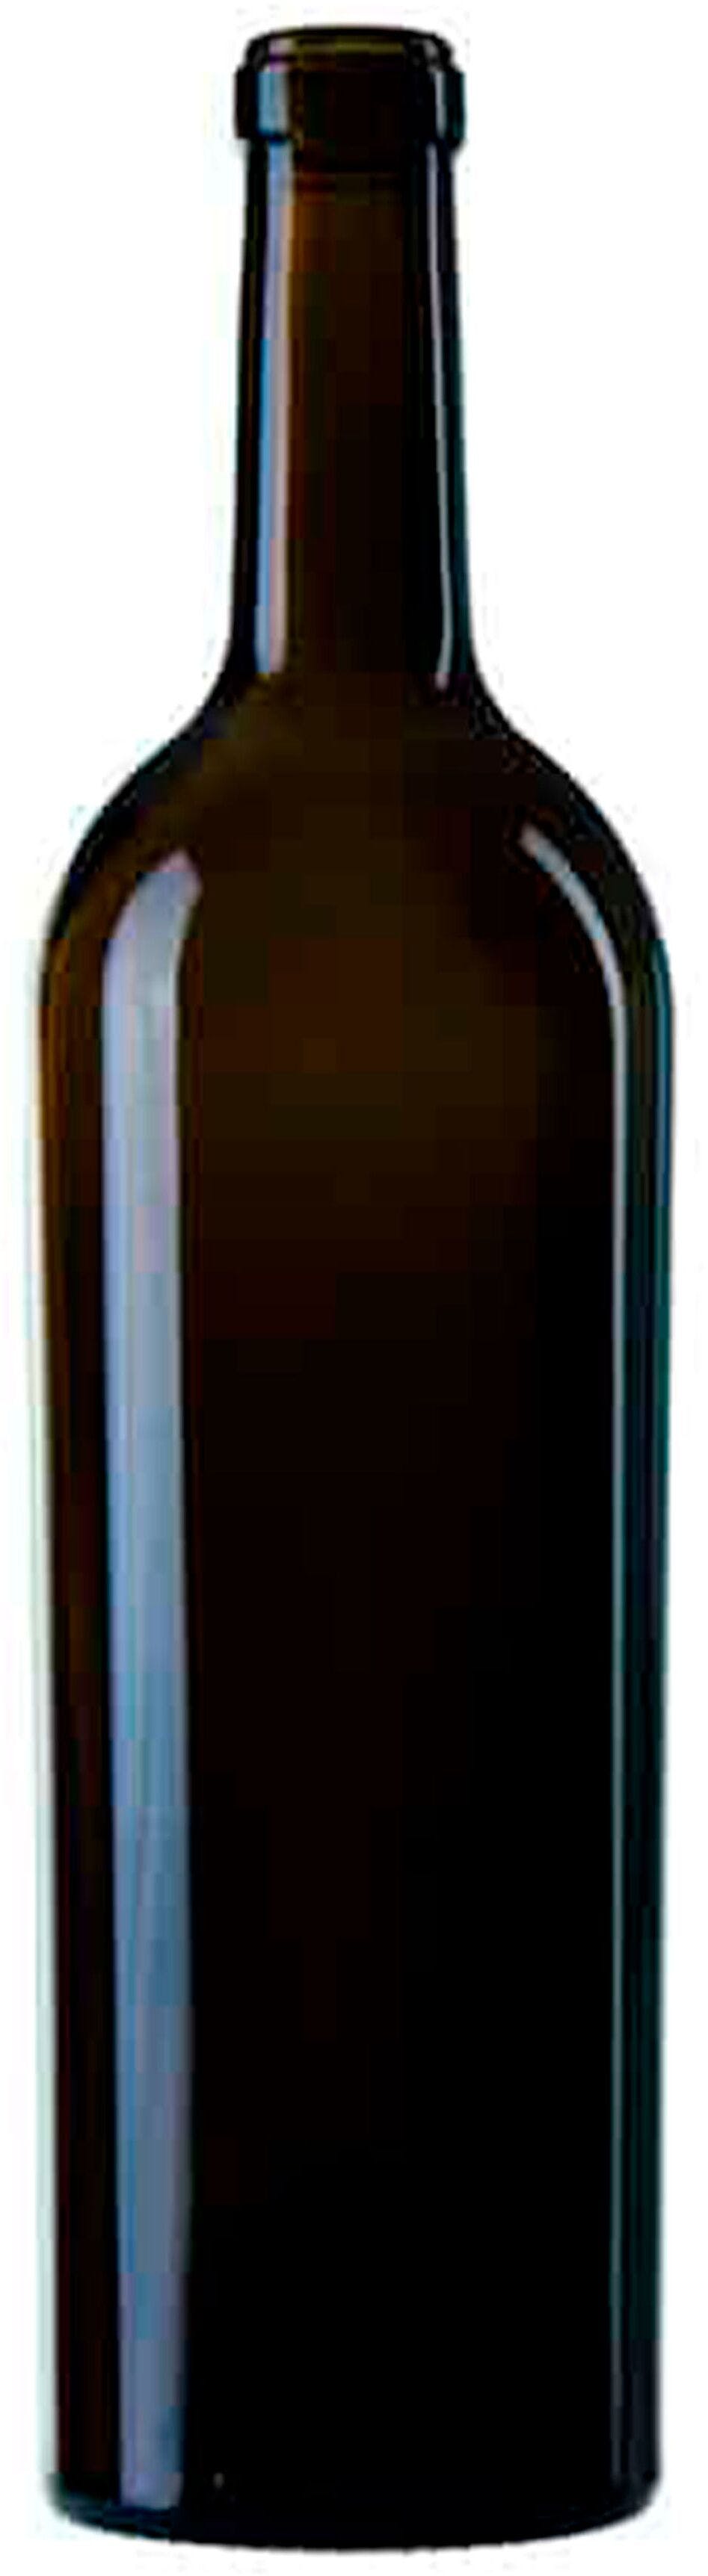 Botella BORDELESA  ANNI 50 750 ml BG-corcho